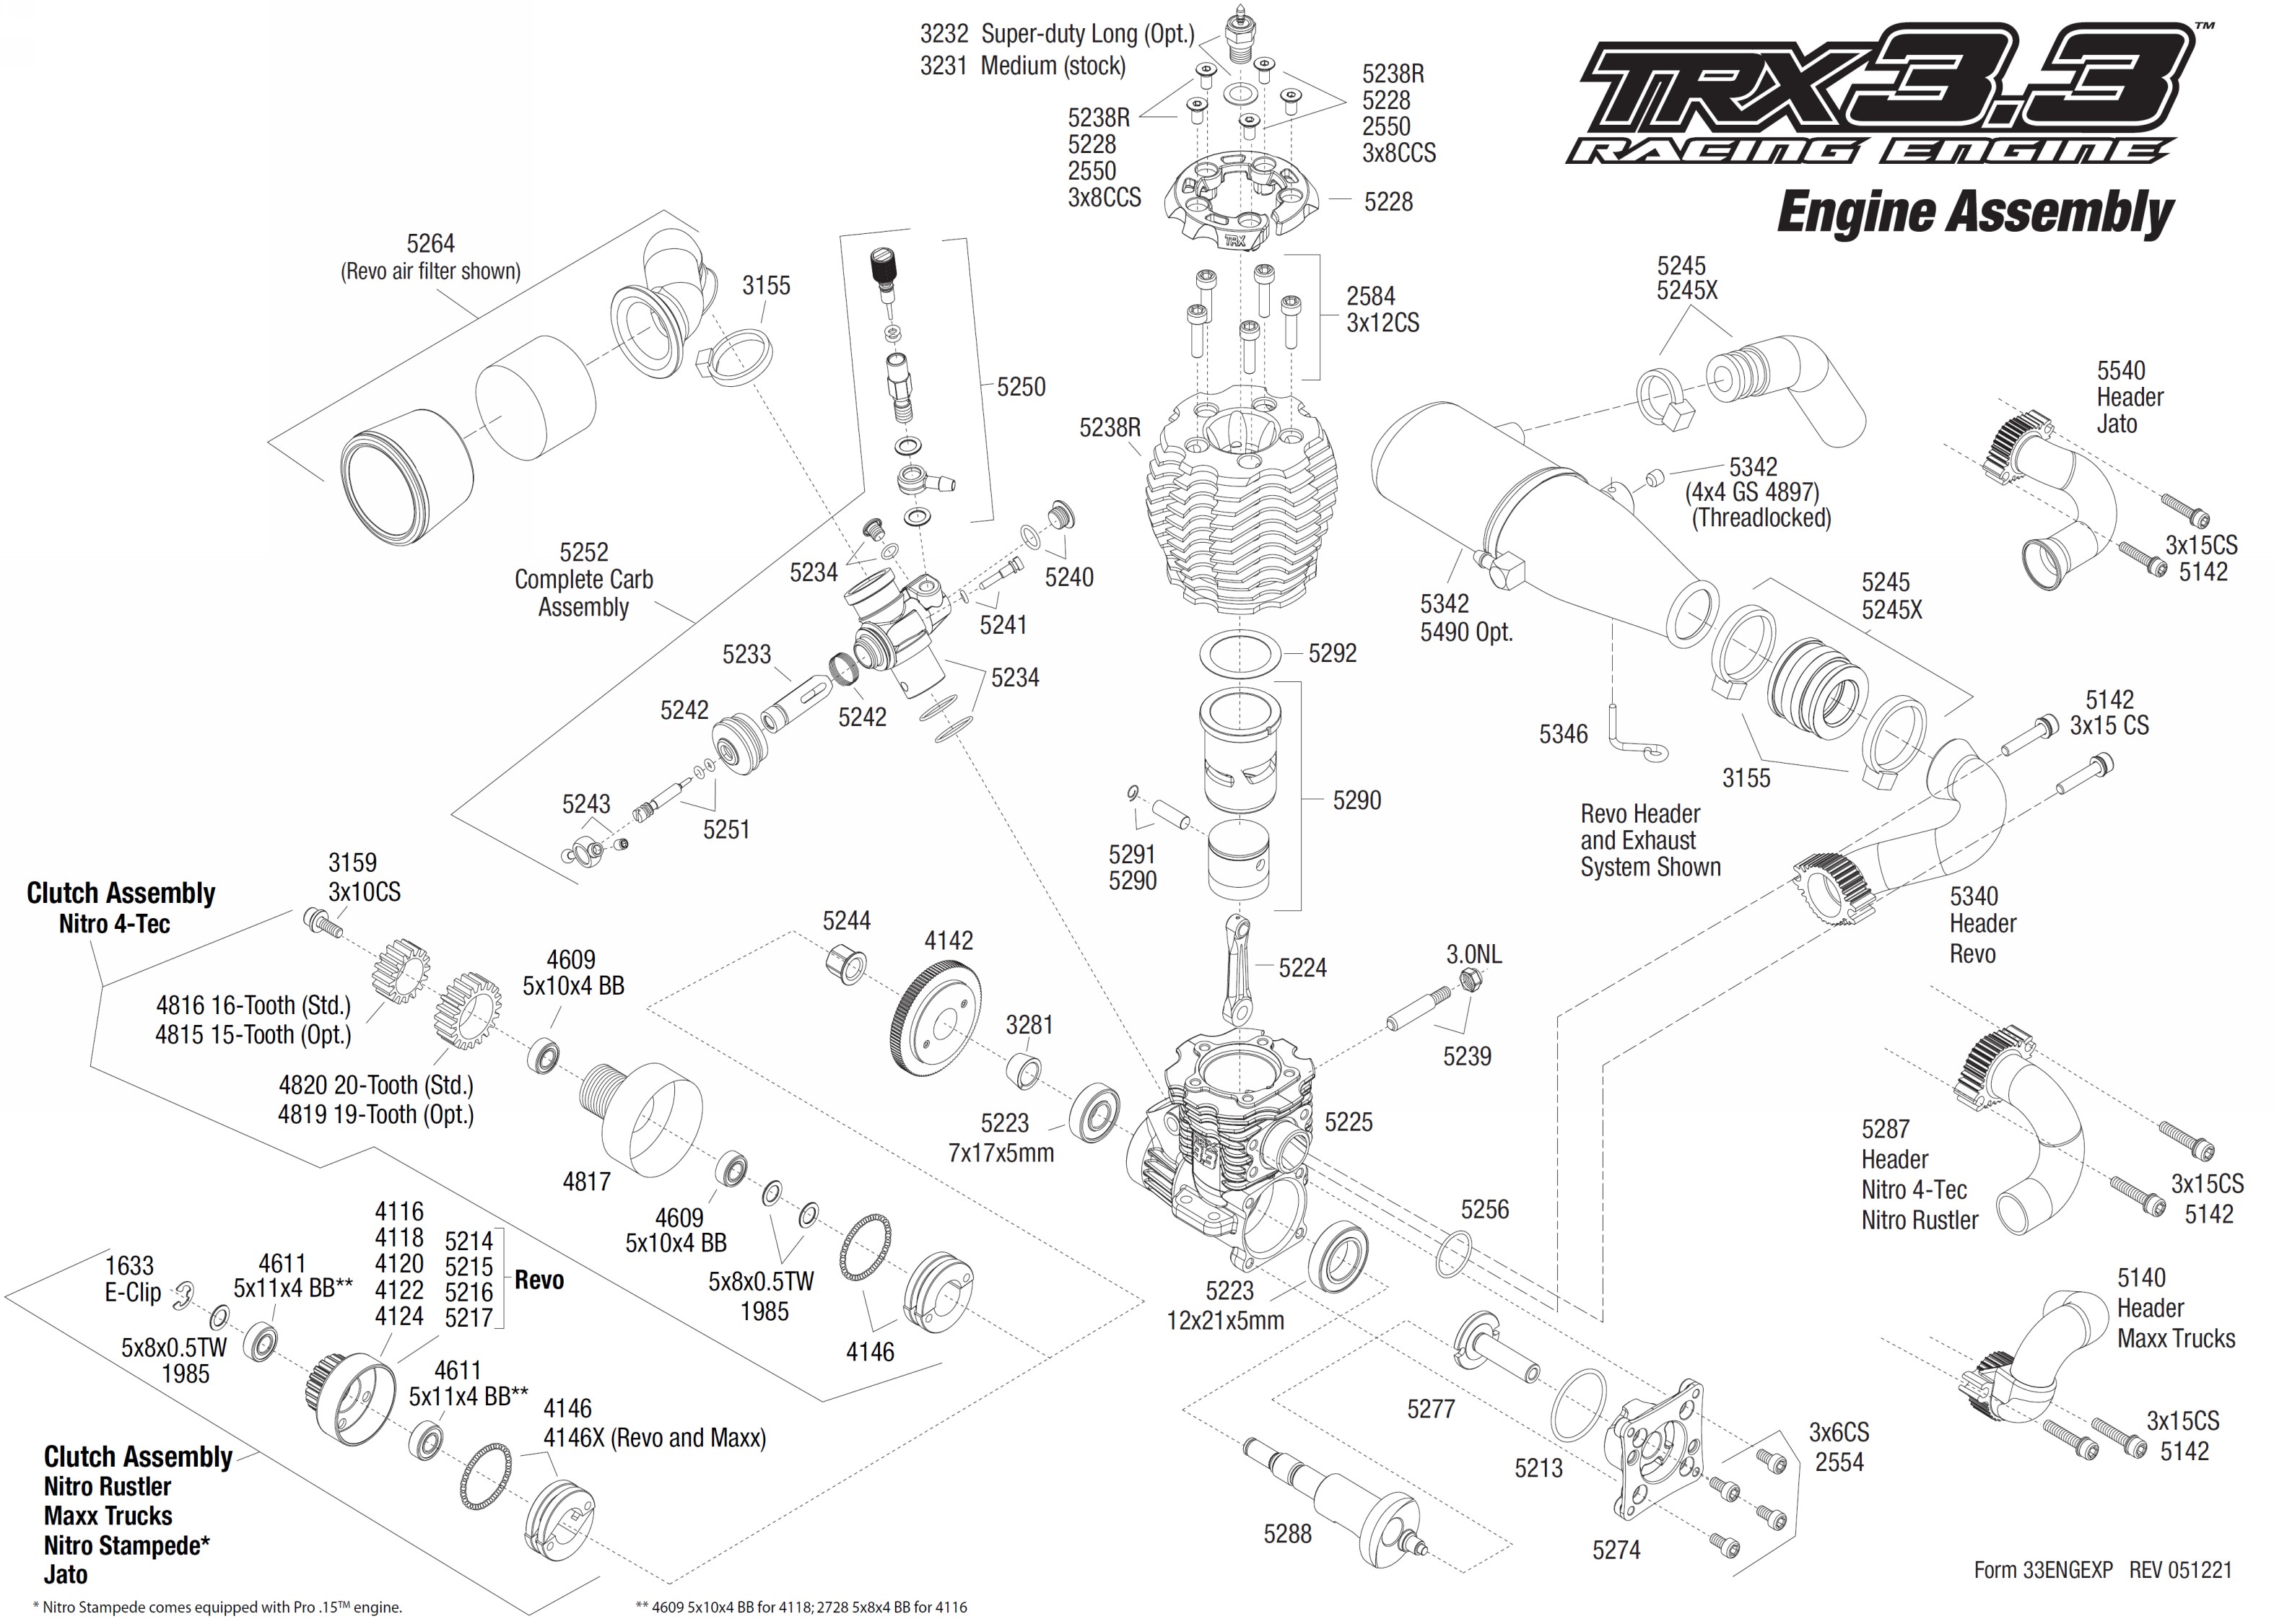 nitro rustler parts diagram